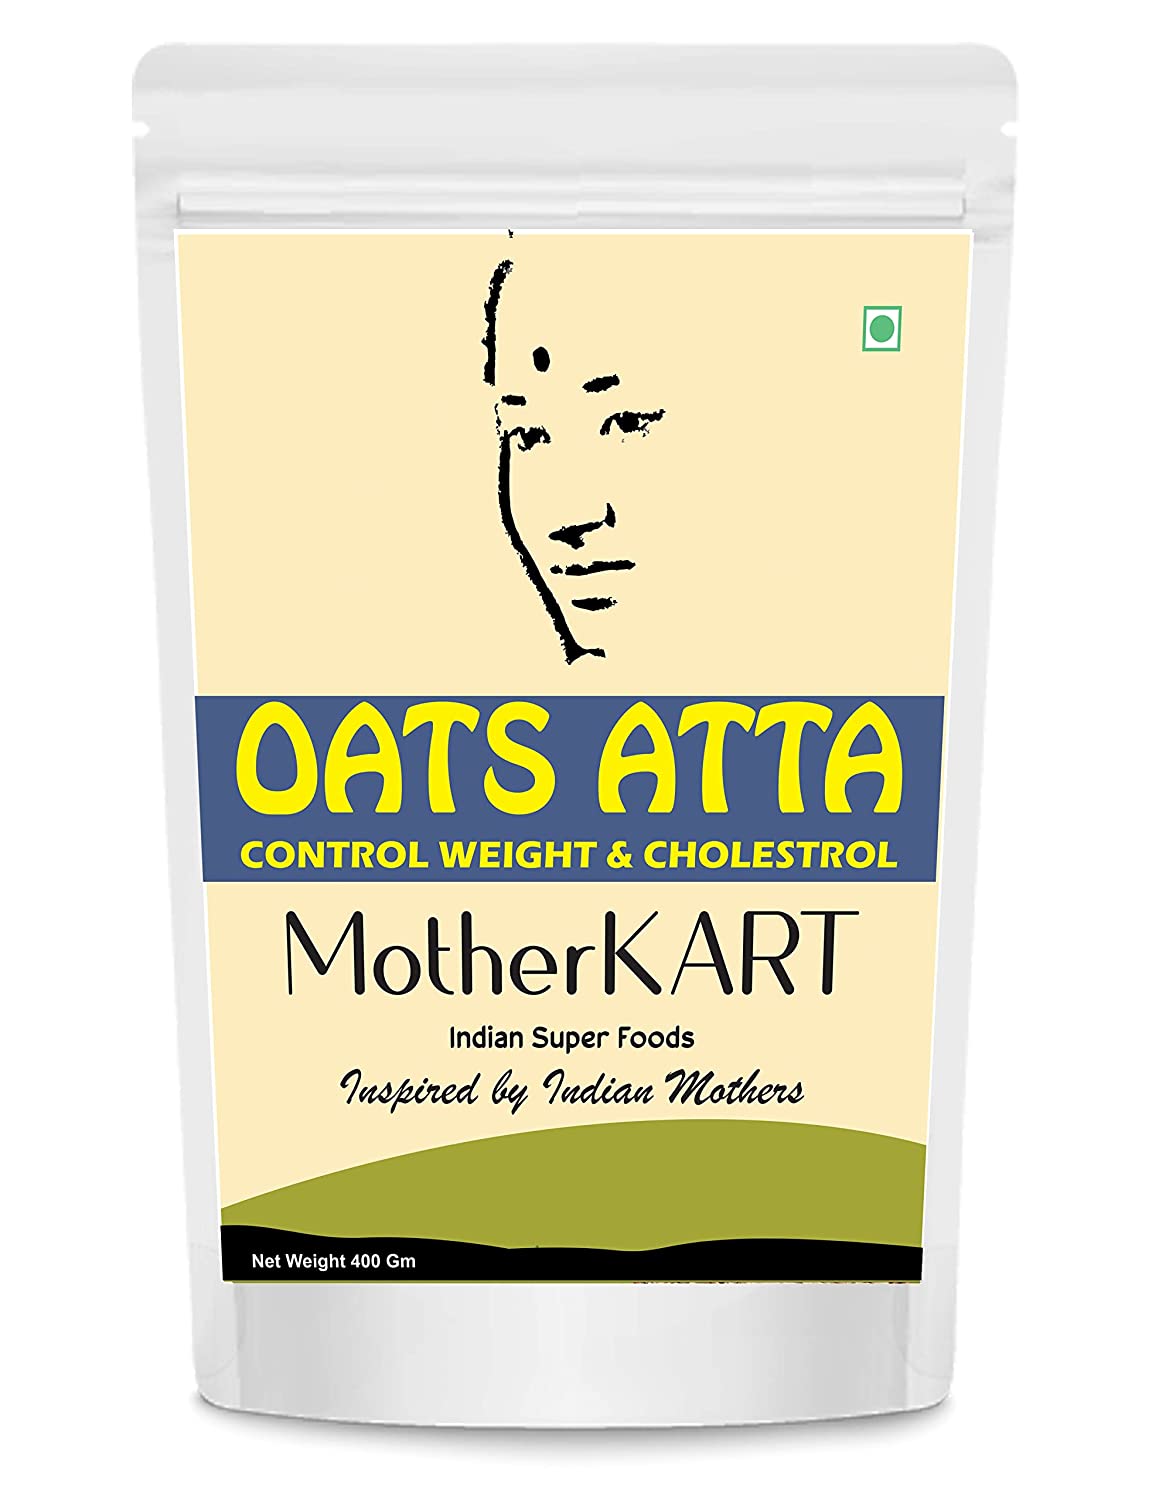 Motherkart Best Oats Flour 400 Gm small Pack - Weight loss & Diabetic friendly